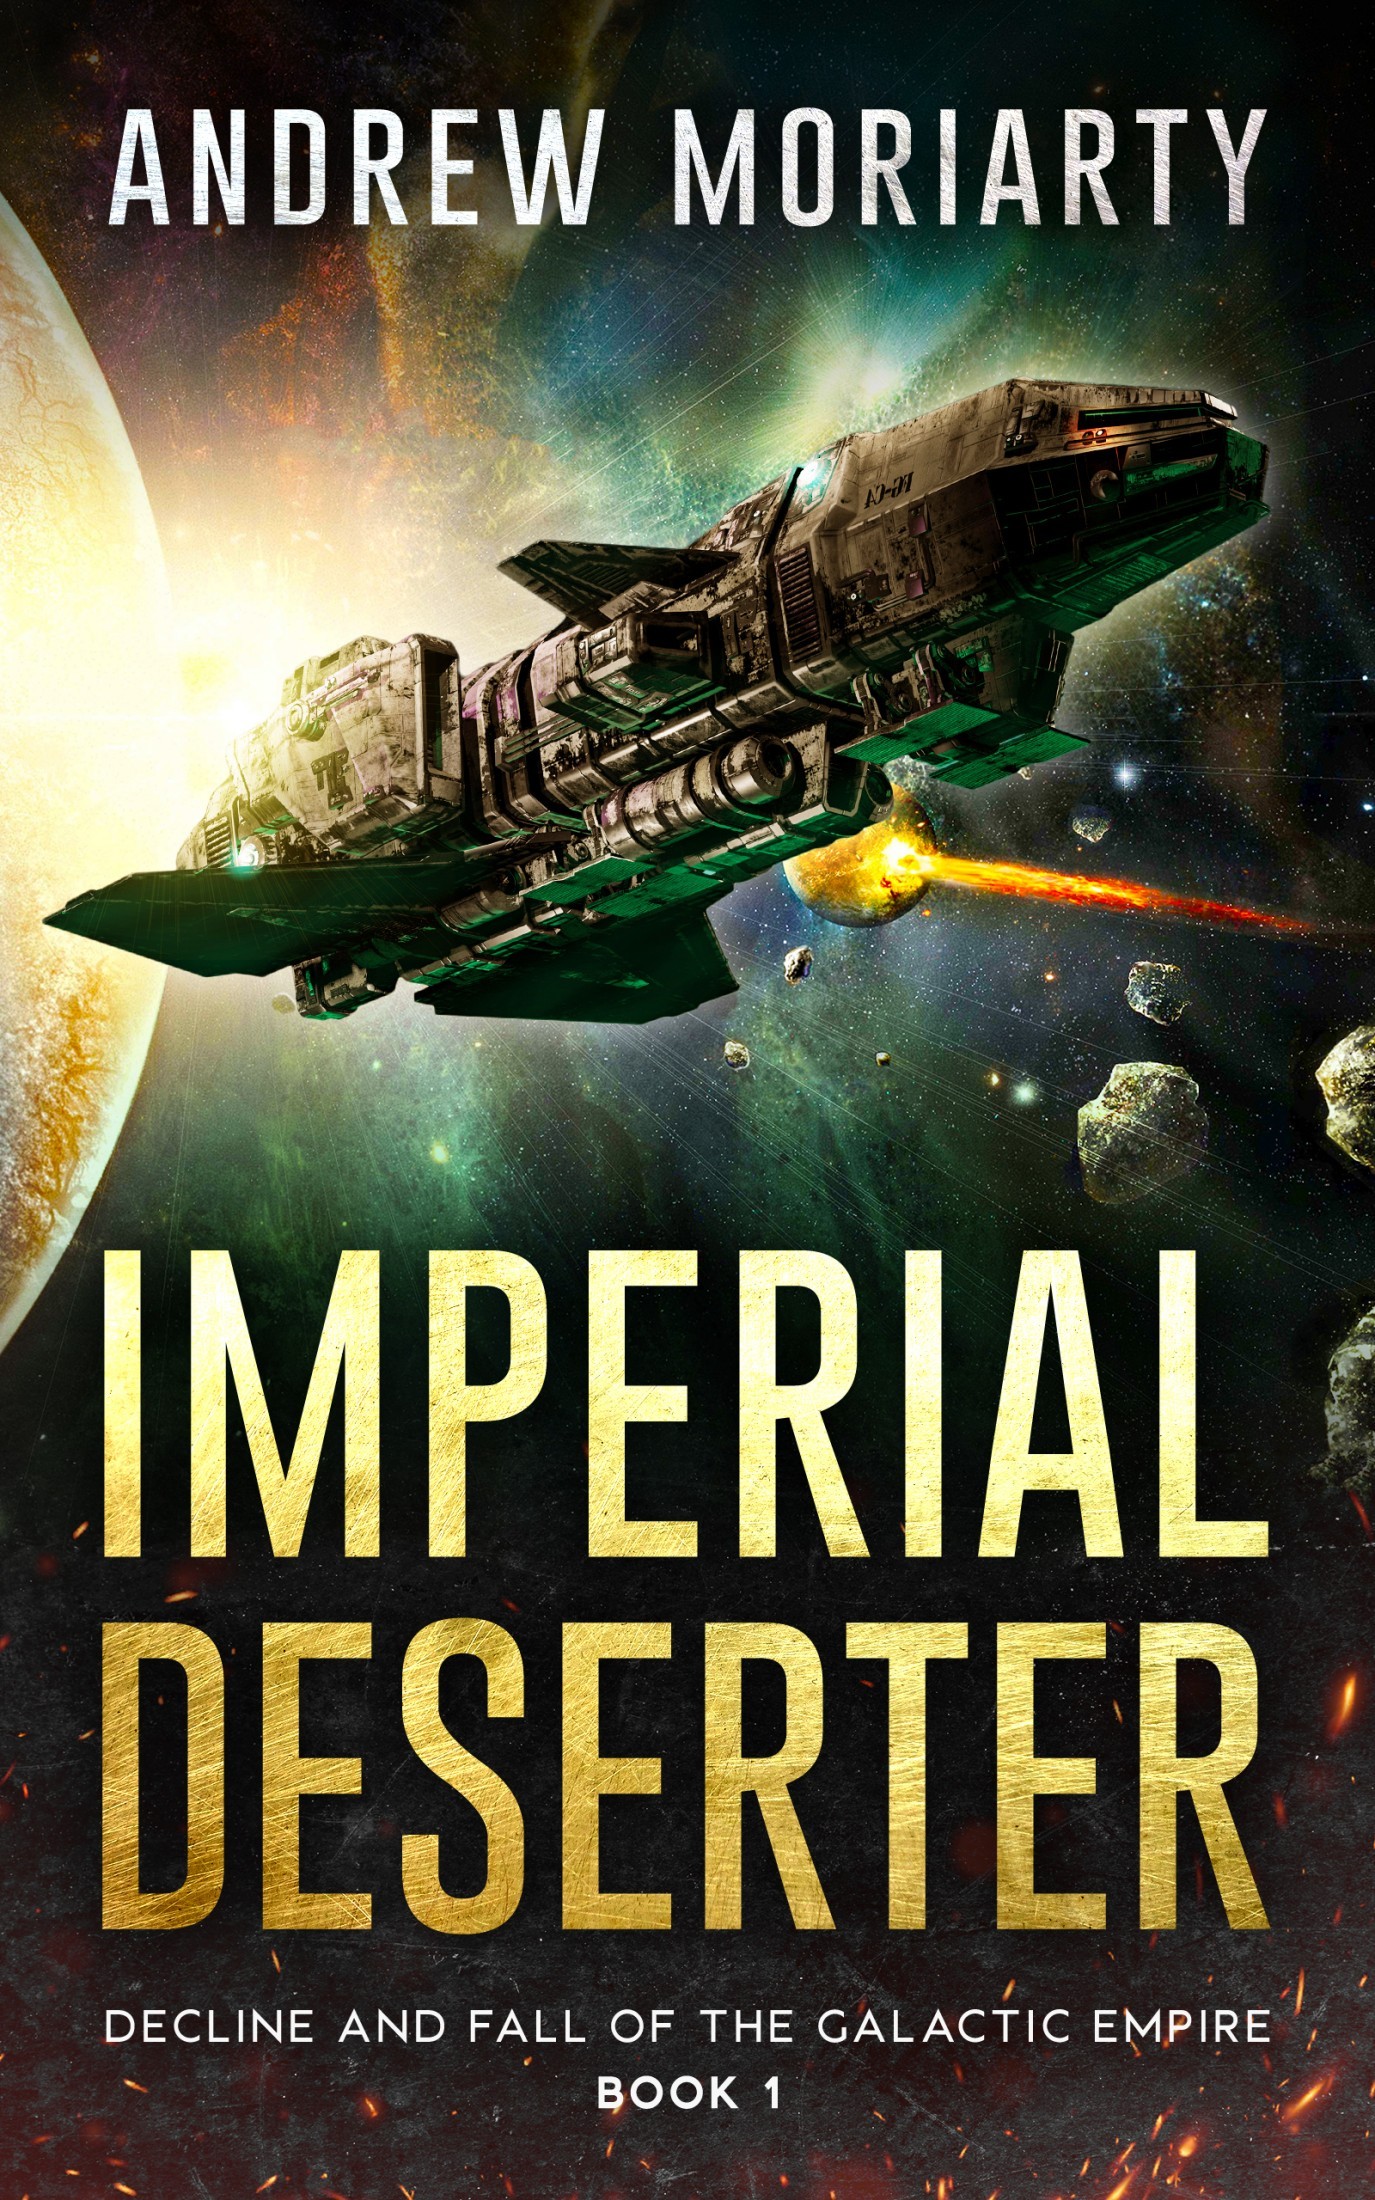 Imperial Deserter